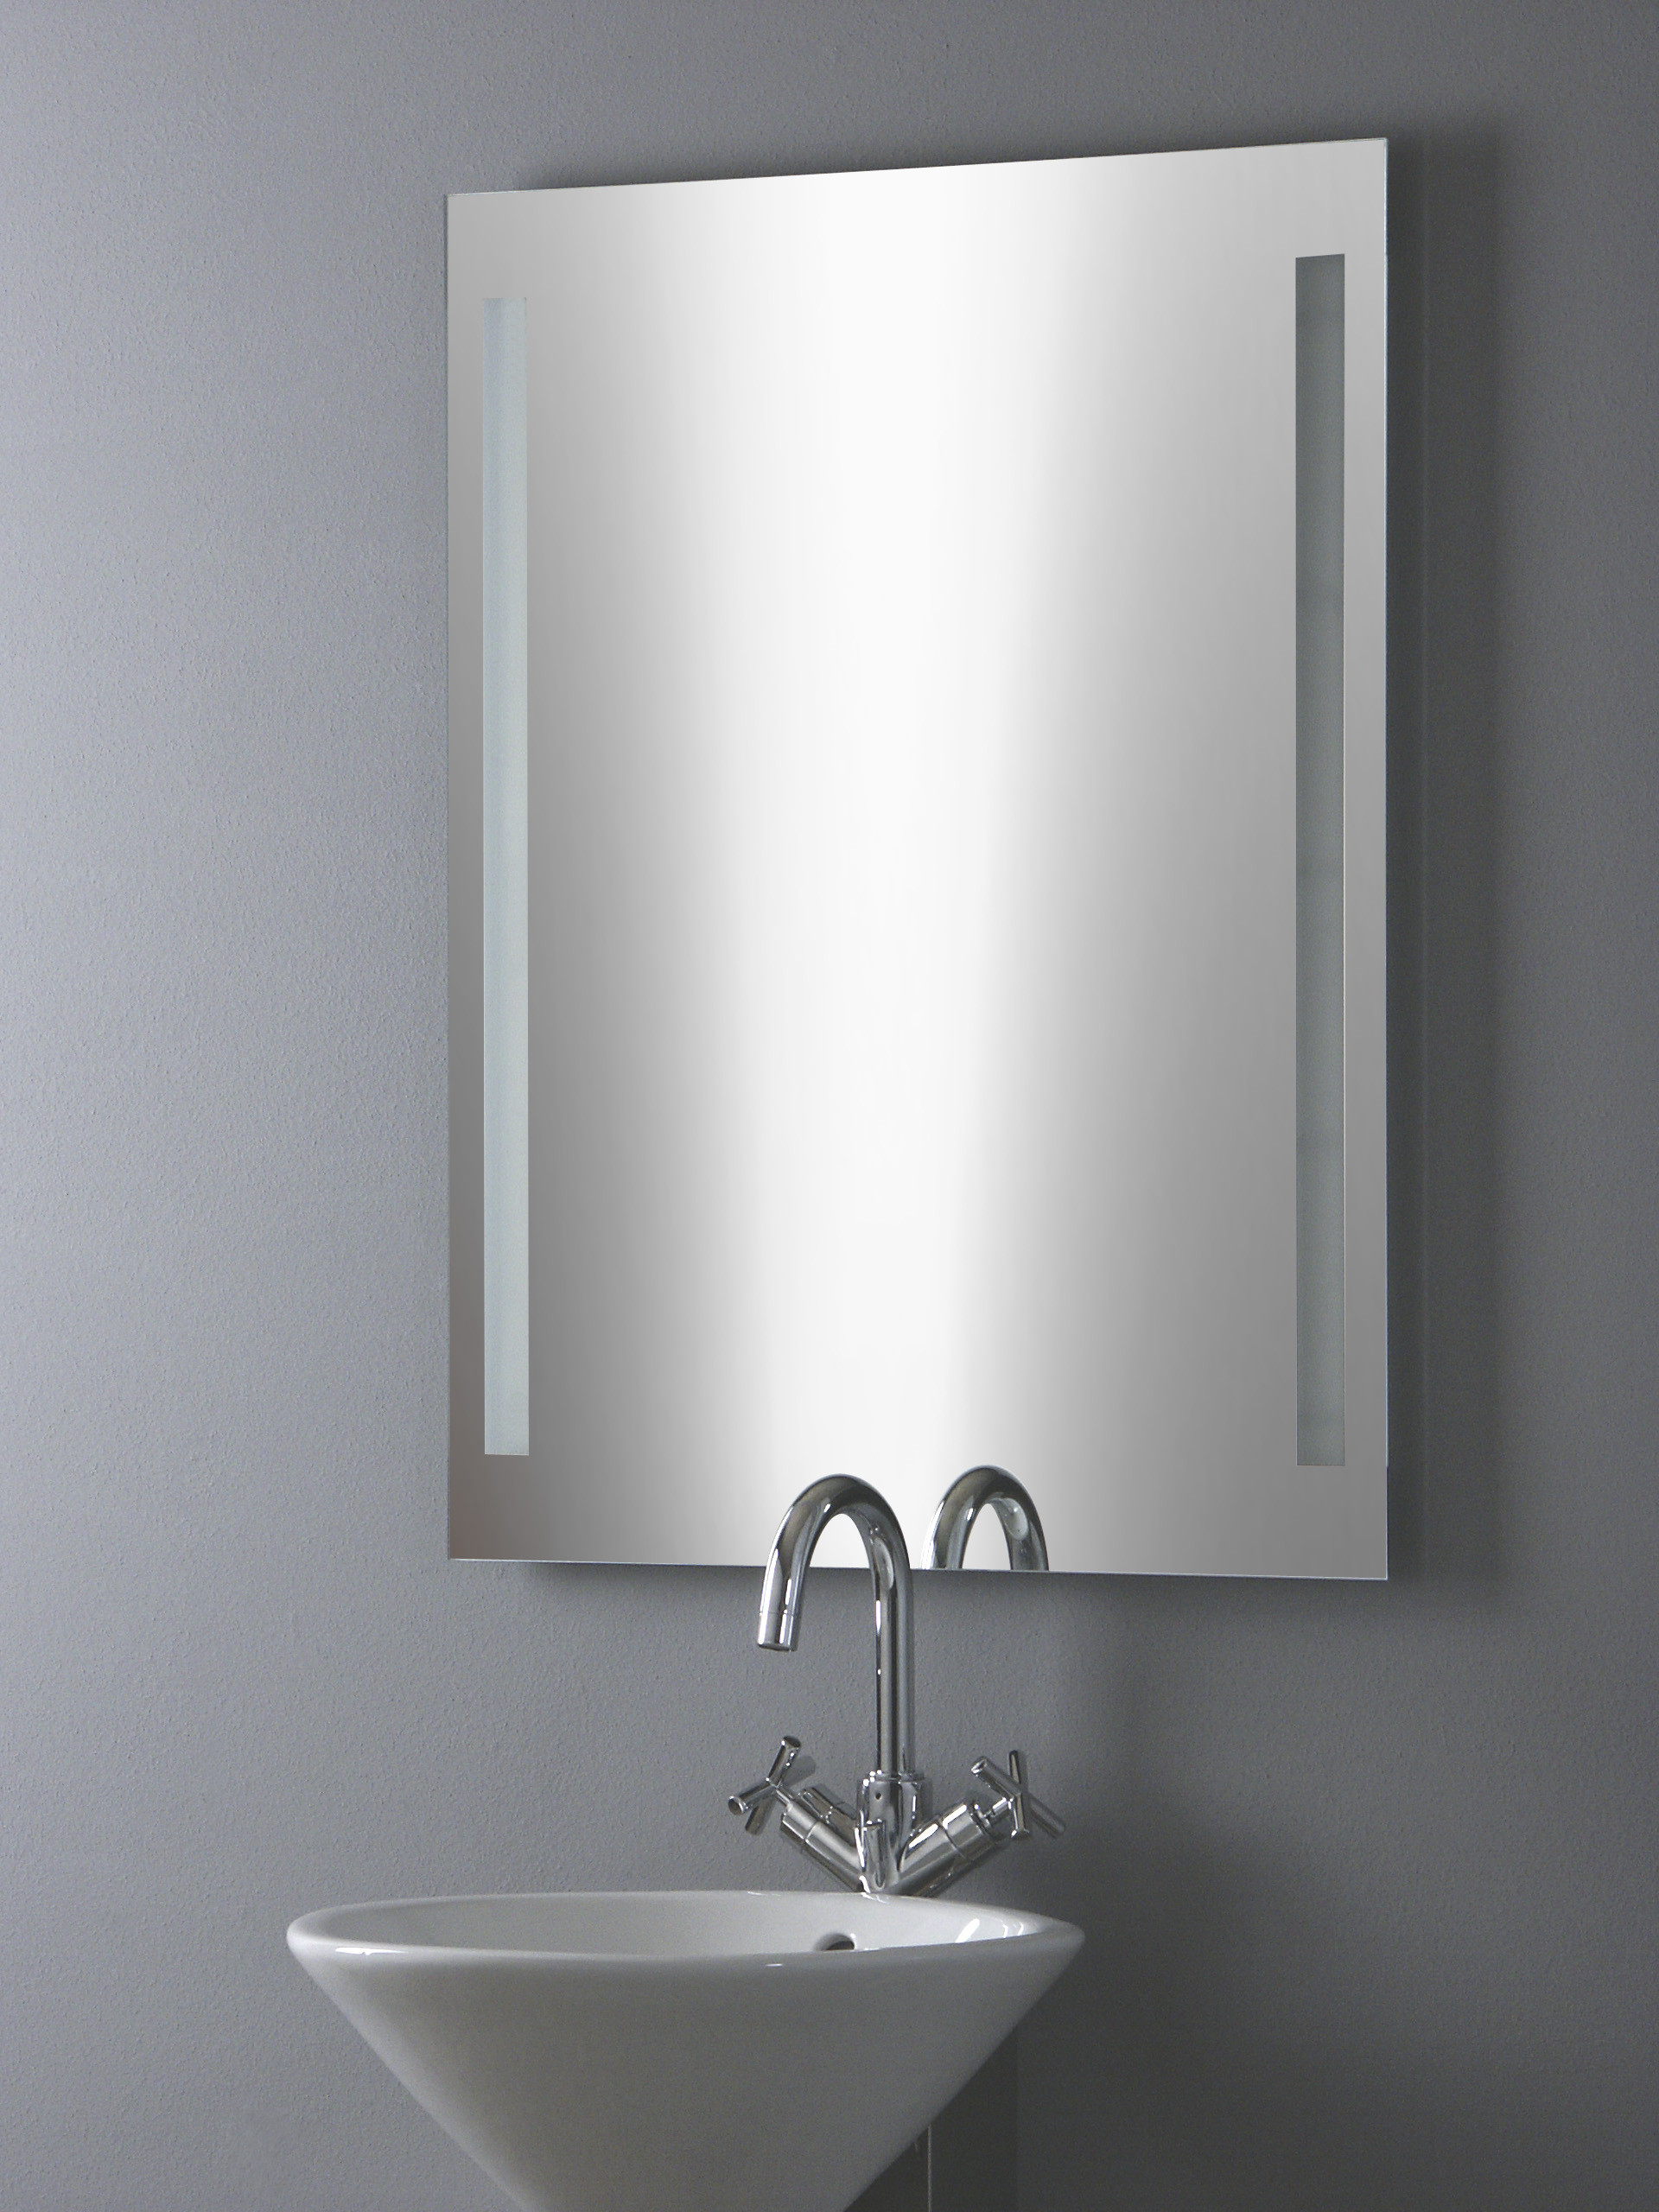 Badezimmerspiegel Mit Beleuchtung
 Badezimmerspiegel mit Beleuchtung